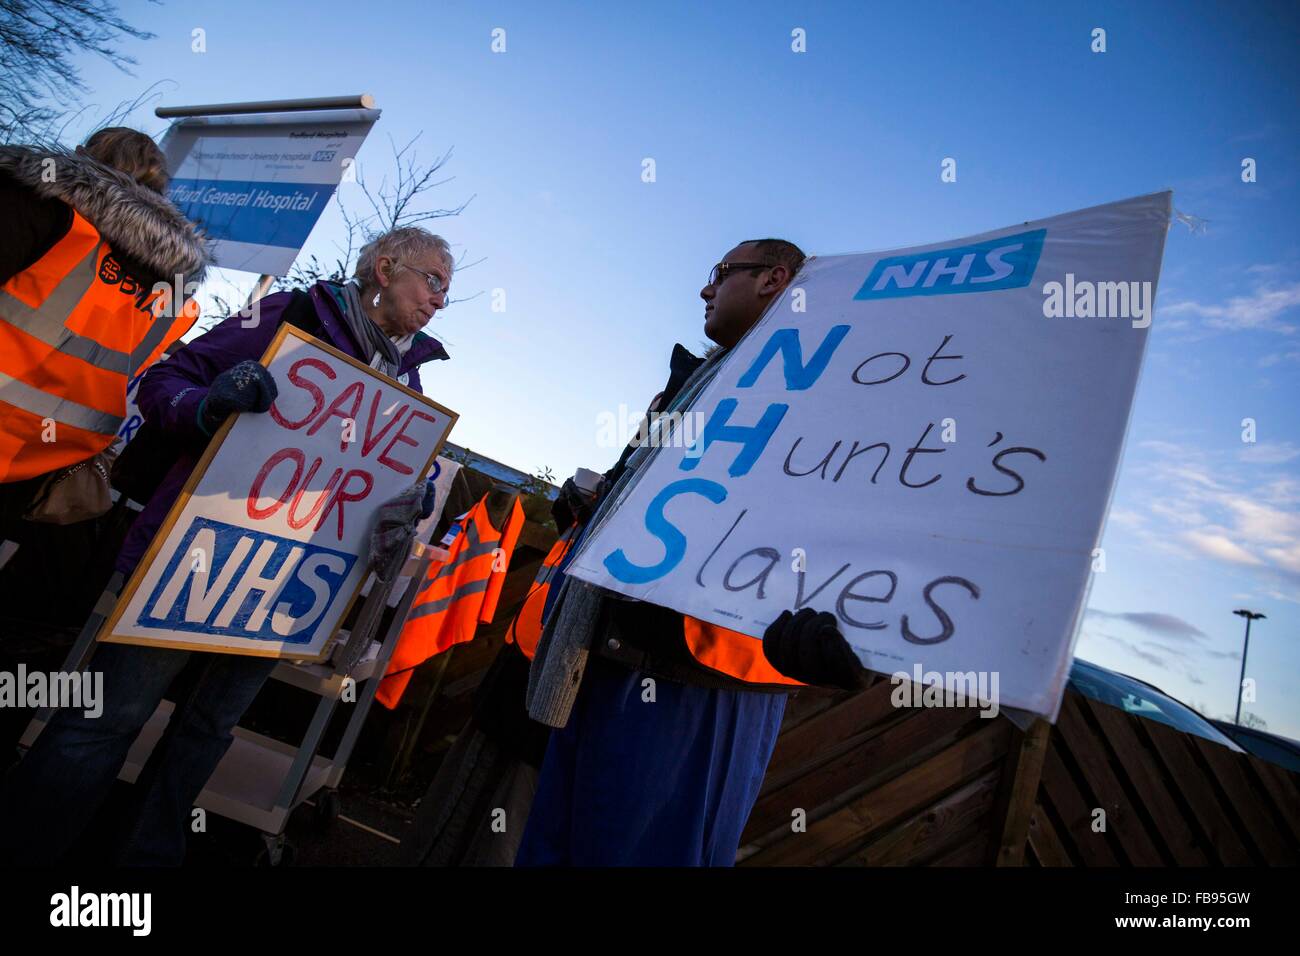 Les médecins en manifestation devant l'Hôpital général de Trafford, Manchester aujourd'hui (mardi 12/1/16). Banque D'Images